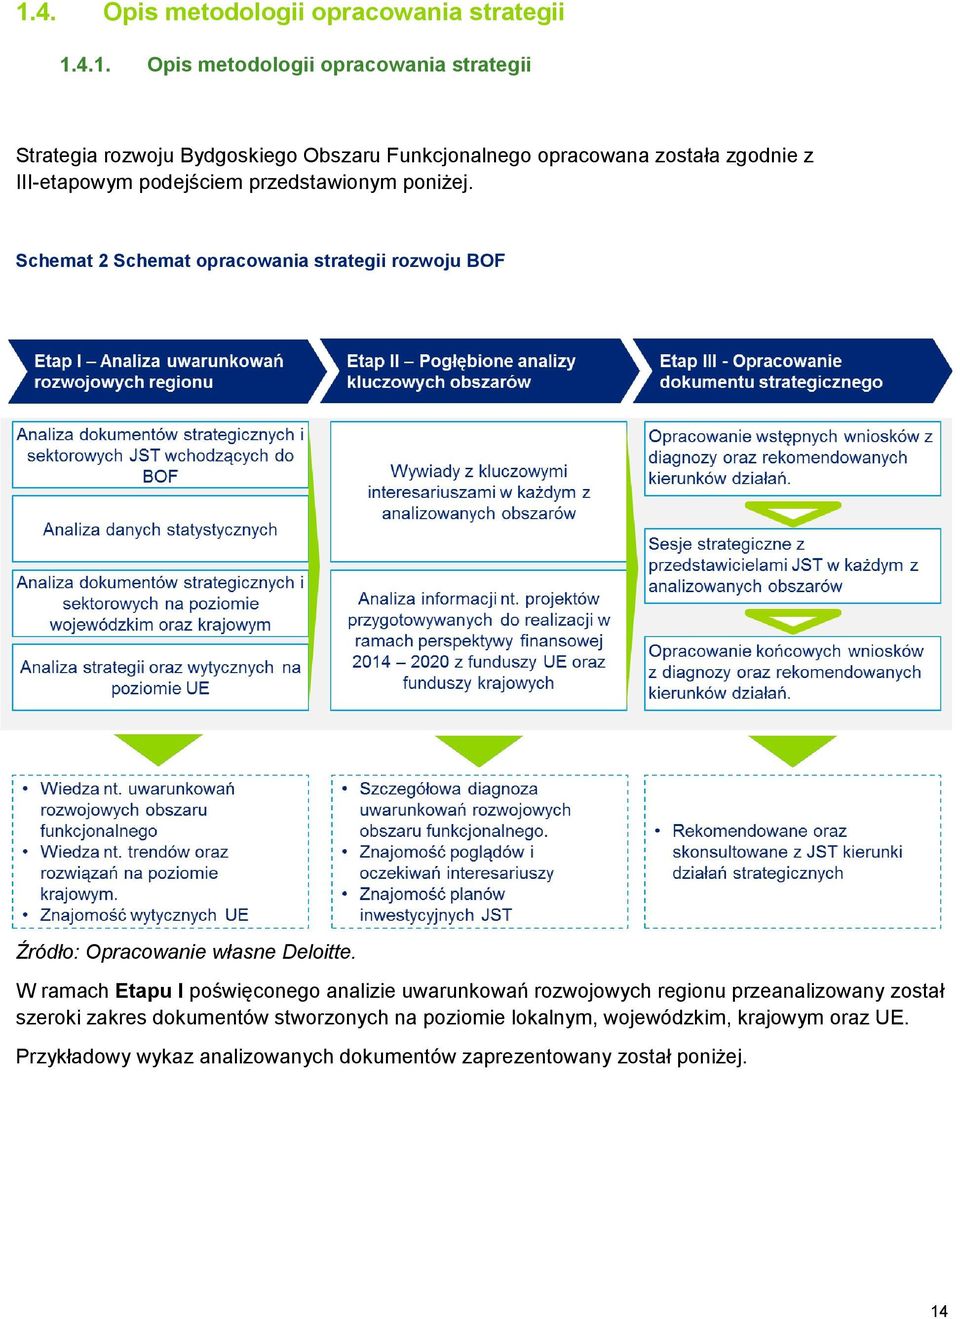 Schemat 2 Schemat opracowania strategii rozwoju BOF Źródło: Opracowanie własne Deloitte.